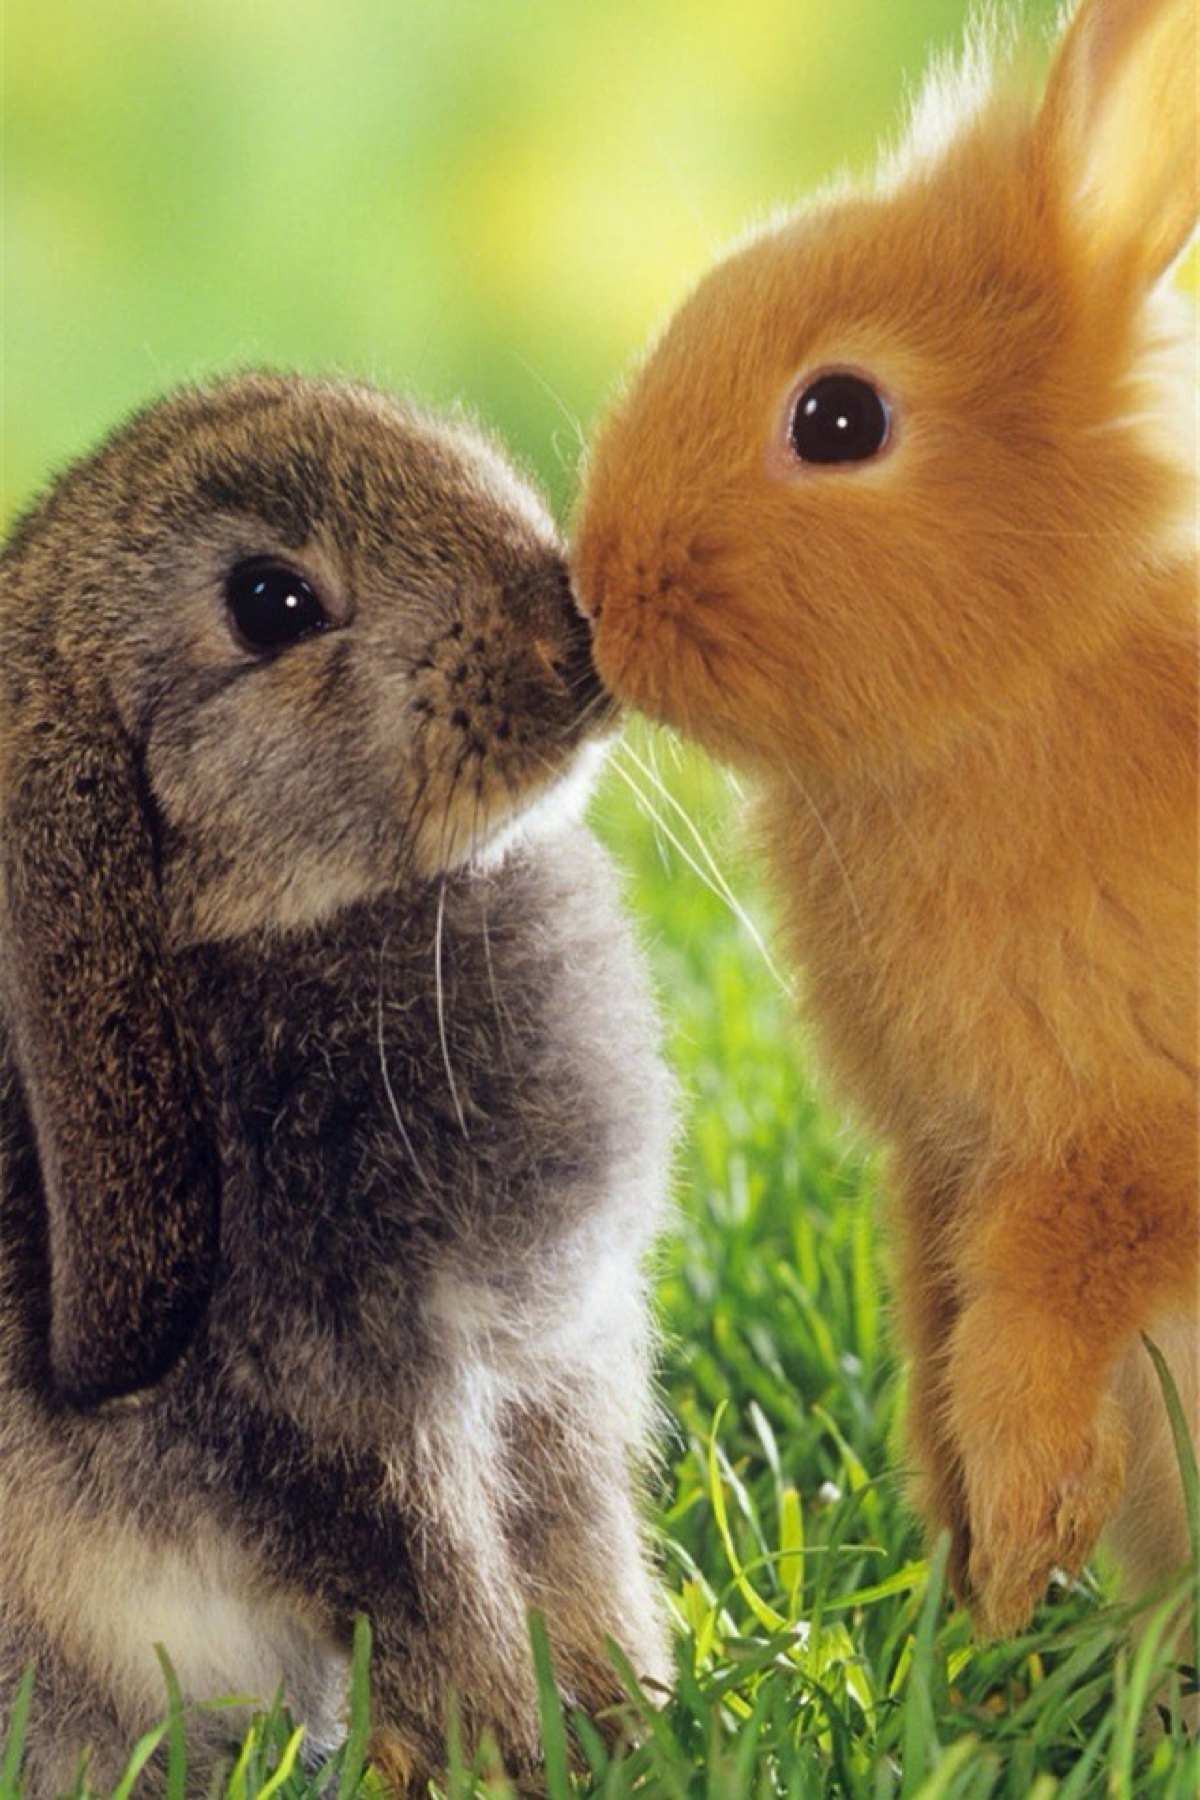 壁纸 锁屏 主屏 小清新 可爱 卖萌 宠物 兔兔 有爱